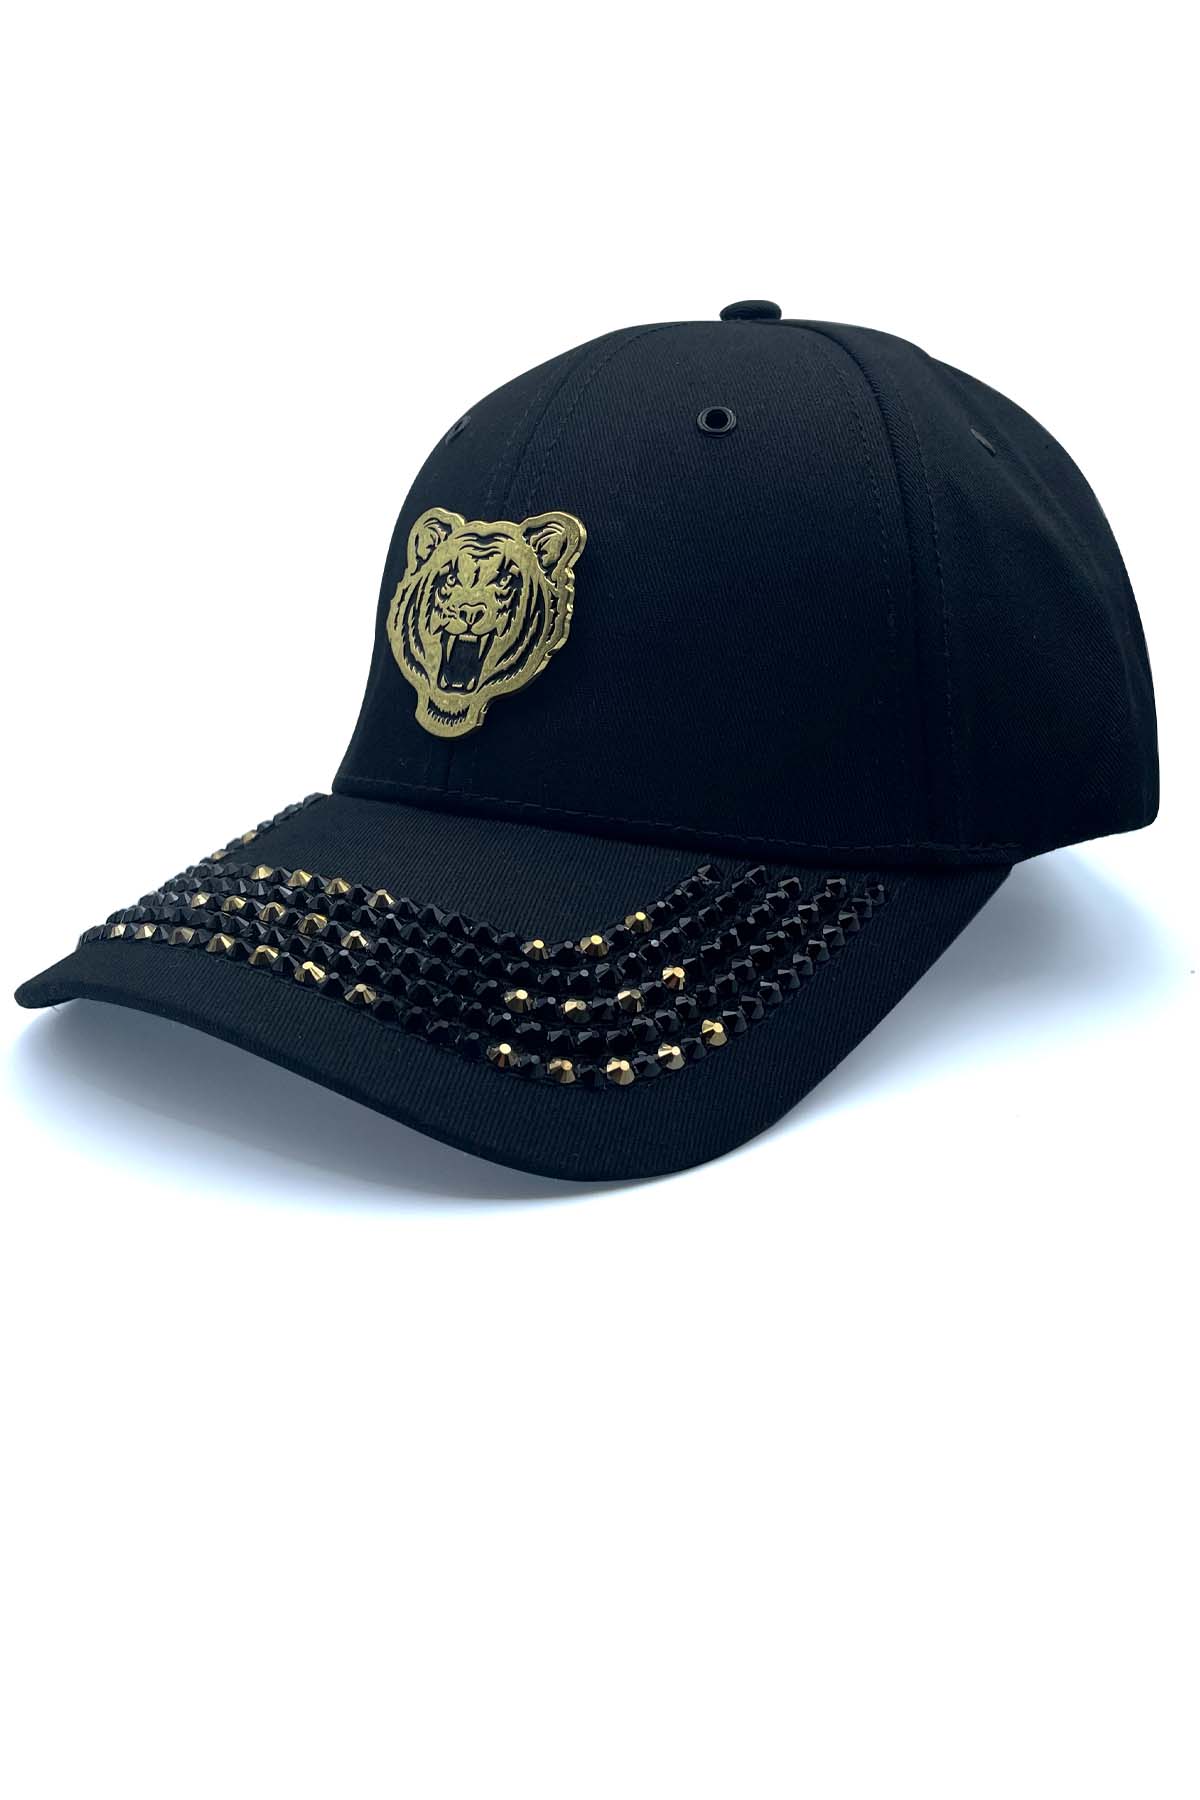 BLACK & GOLD SWAROVSKI CRYSTAL TIGER CAP